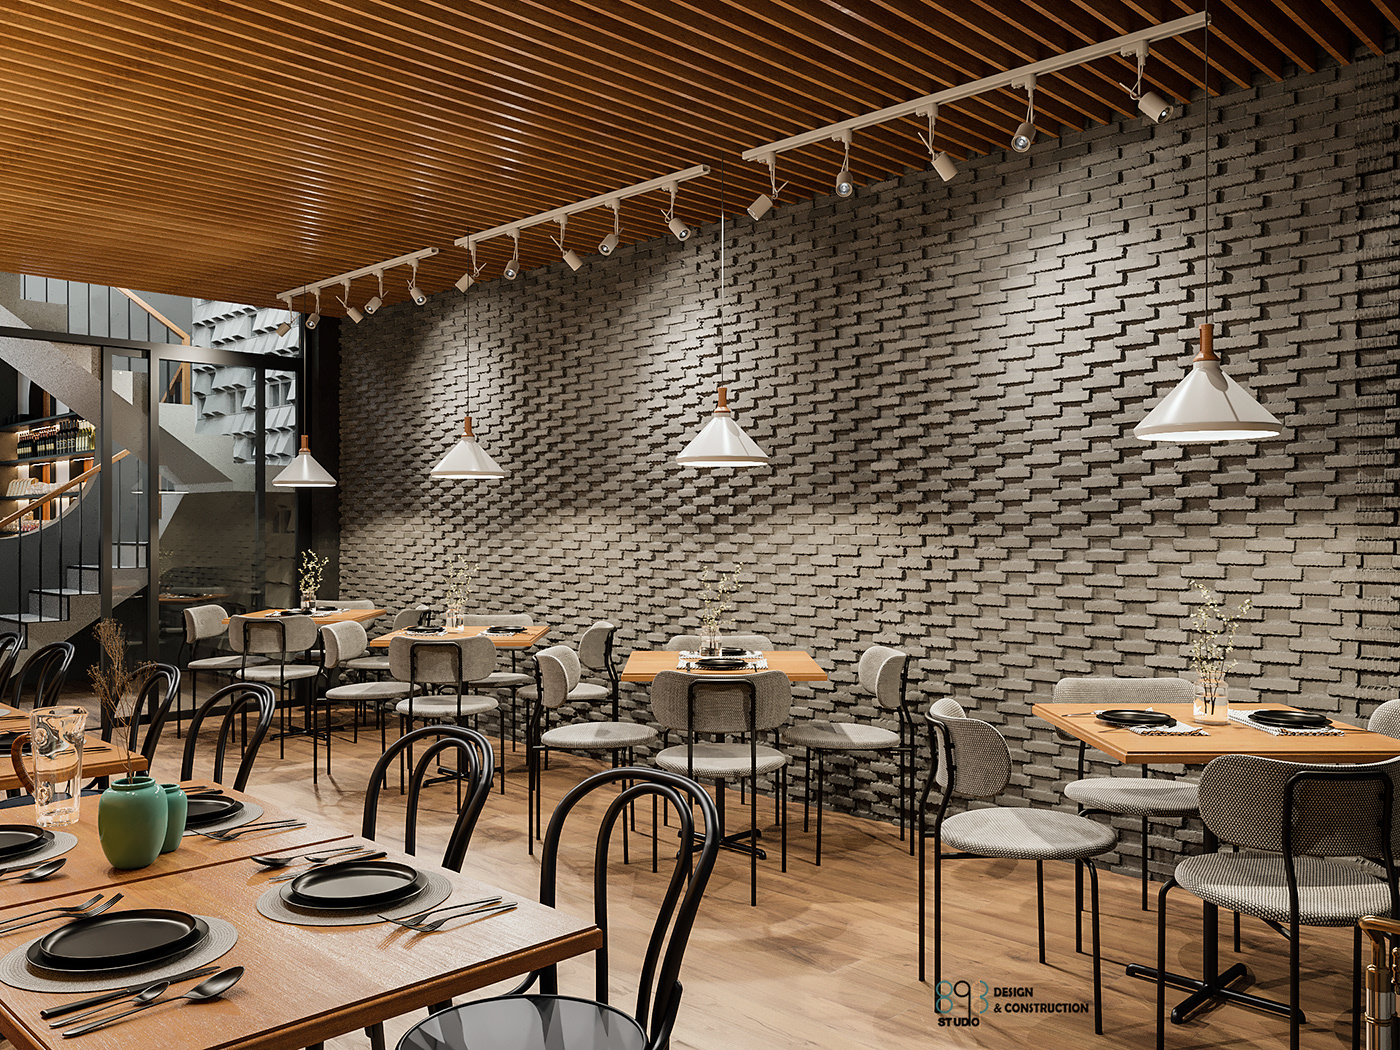 architecture archviz CGI Interior interiordesign Renovated restaurant restaurantdesign visual